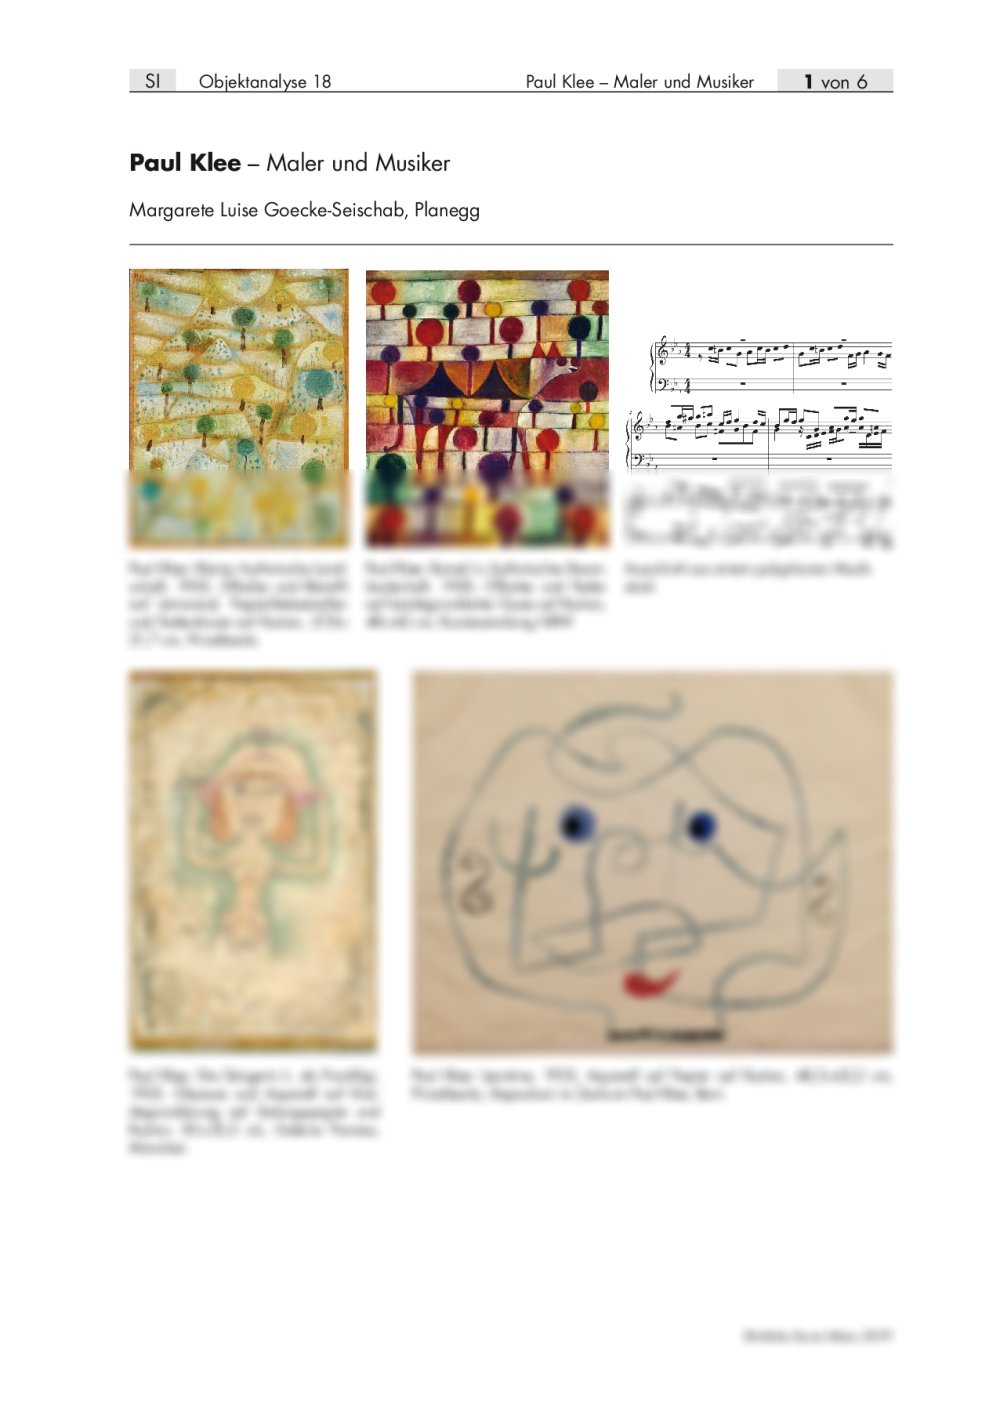 Paul Klee als Maler und Musiker - Seite 1